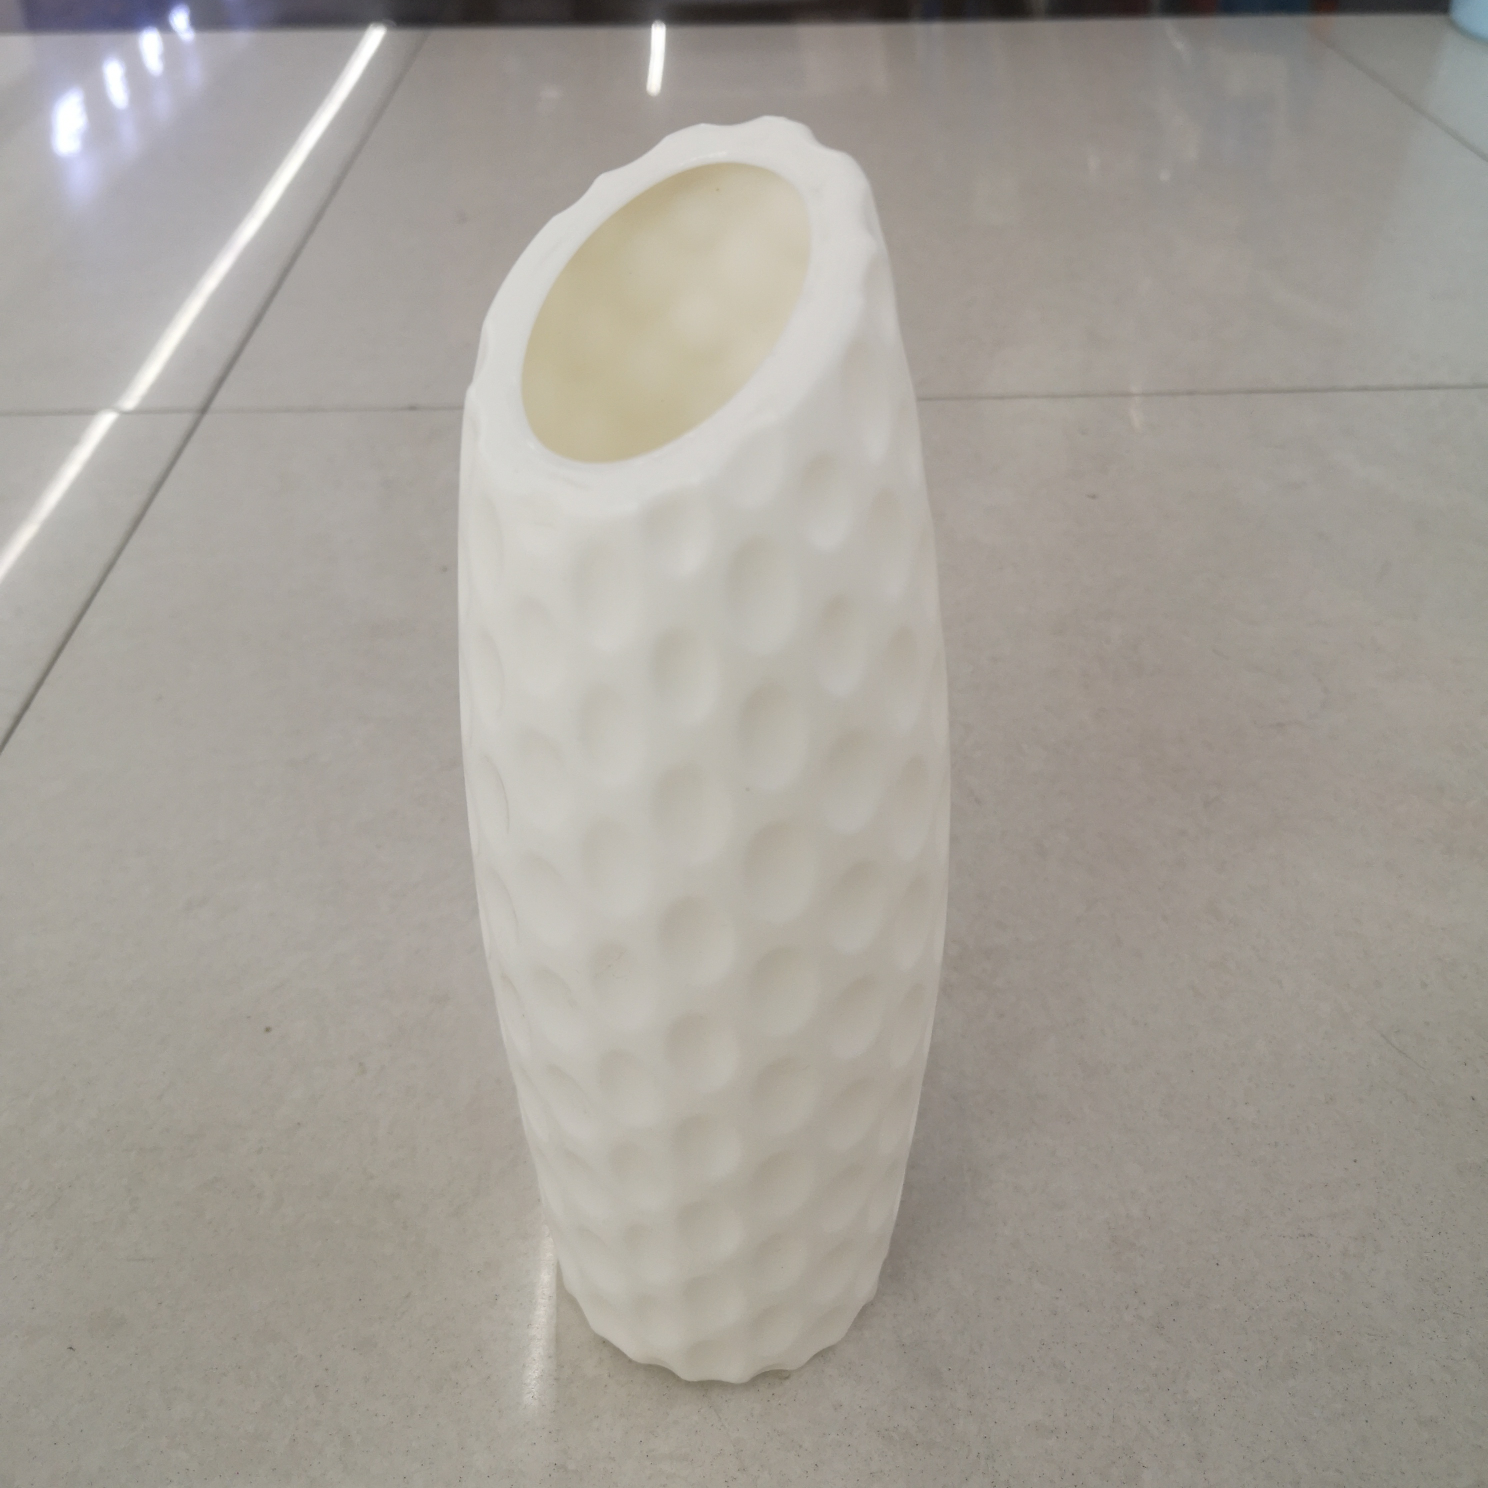 塑料花瓶535一Hl图